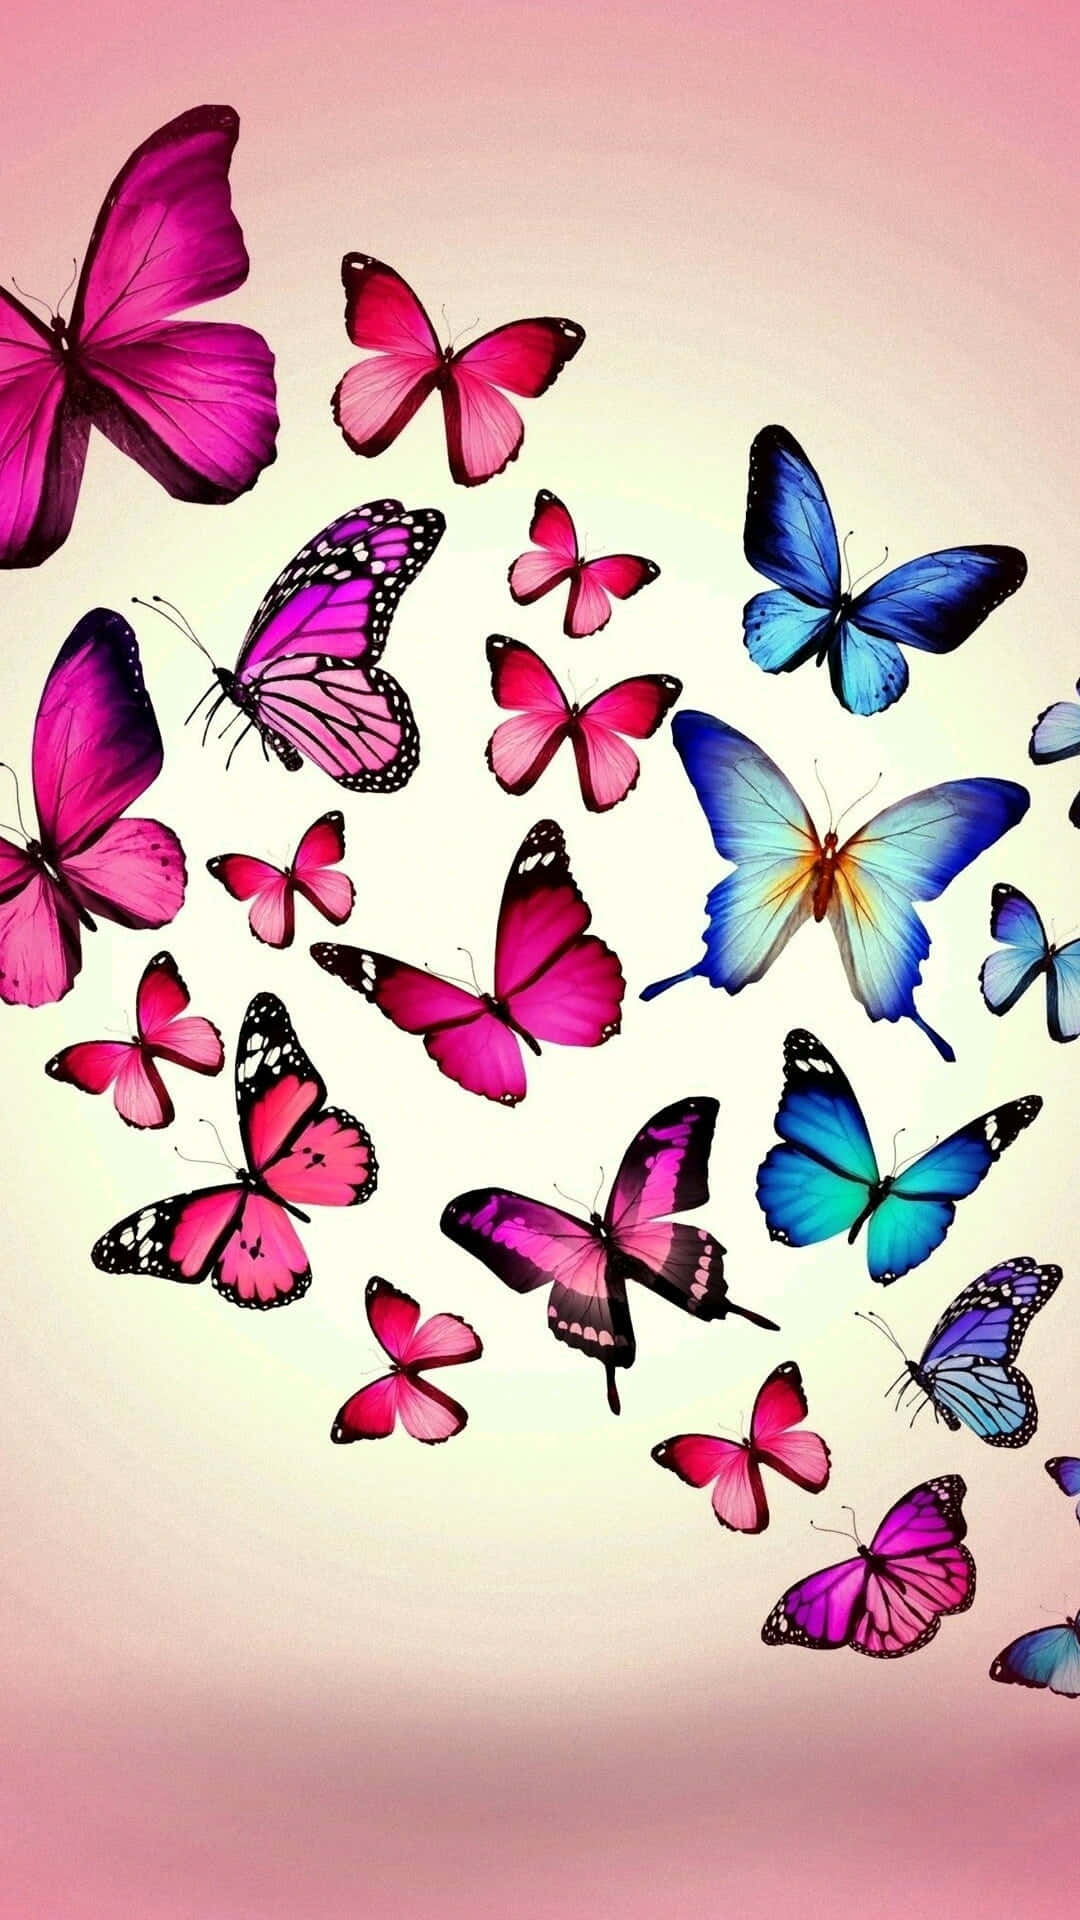 Einegruppe Von Schmetterlingen, Die Durch Die Luft Fliegen